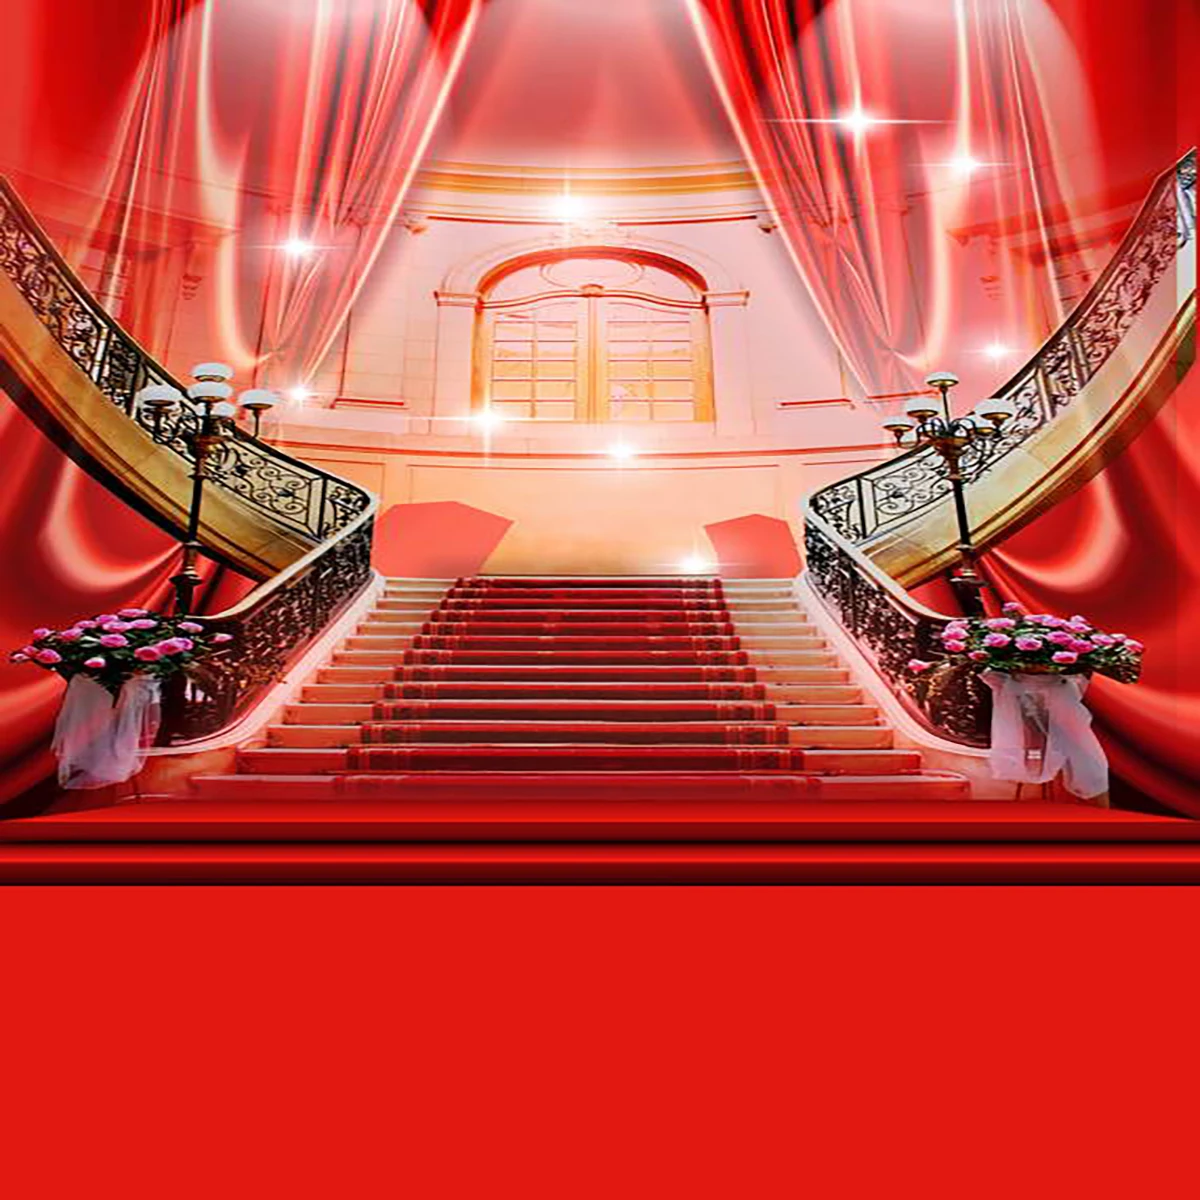 

Фон для студийной фотосъемки с изображением блестящей Красной ковровой дорожки занавеса лестницы зала свадьбы